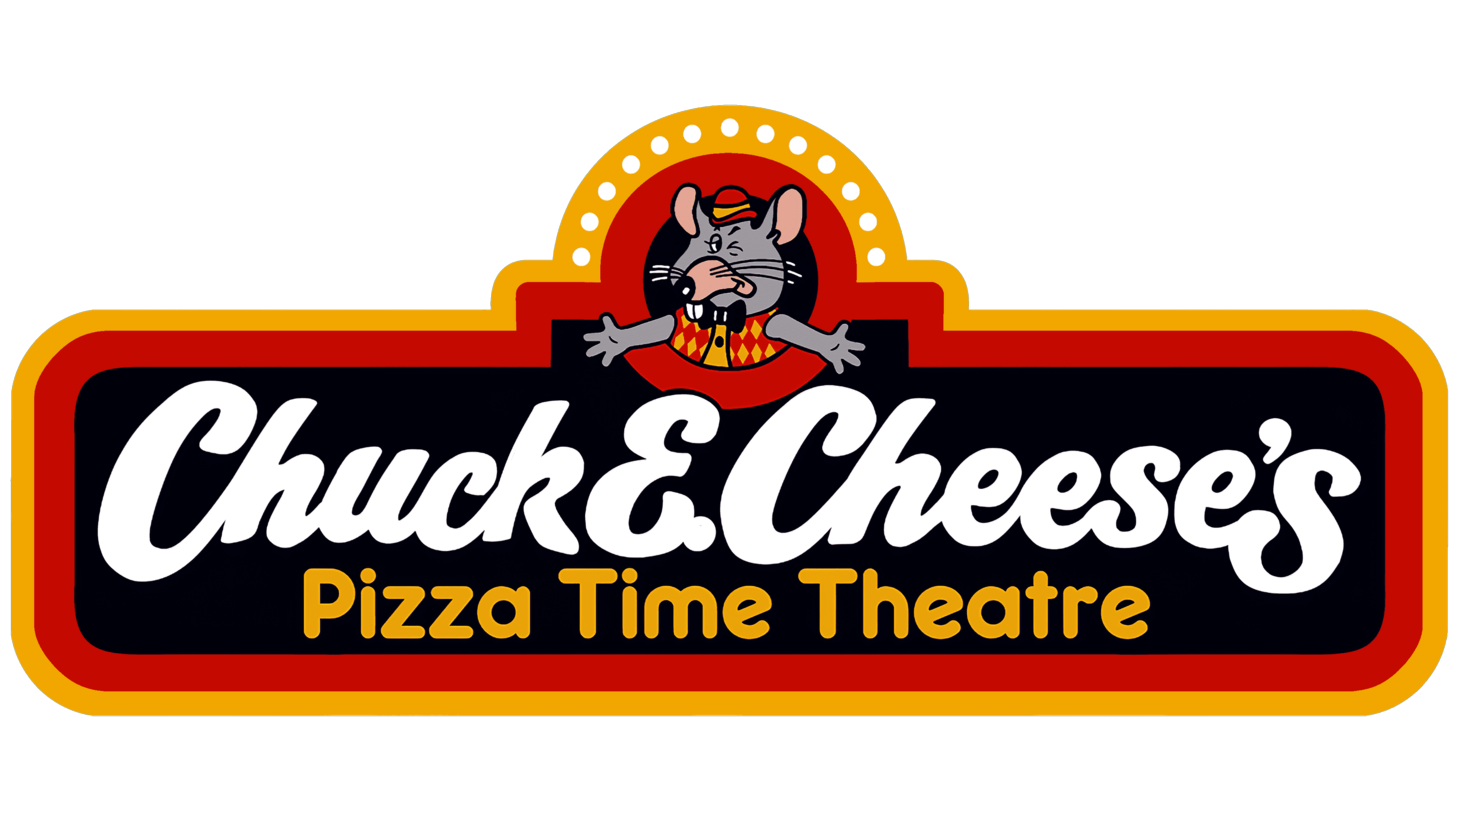 Chuck e. cheeses pizza time theatre sign 1981 1984